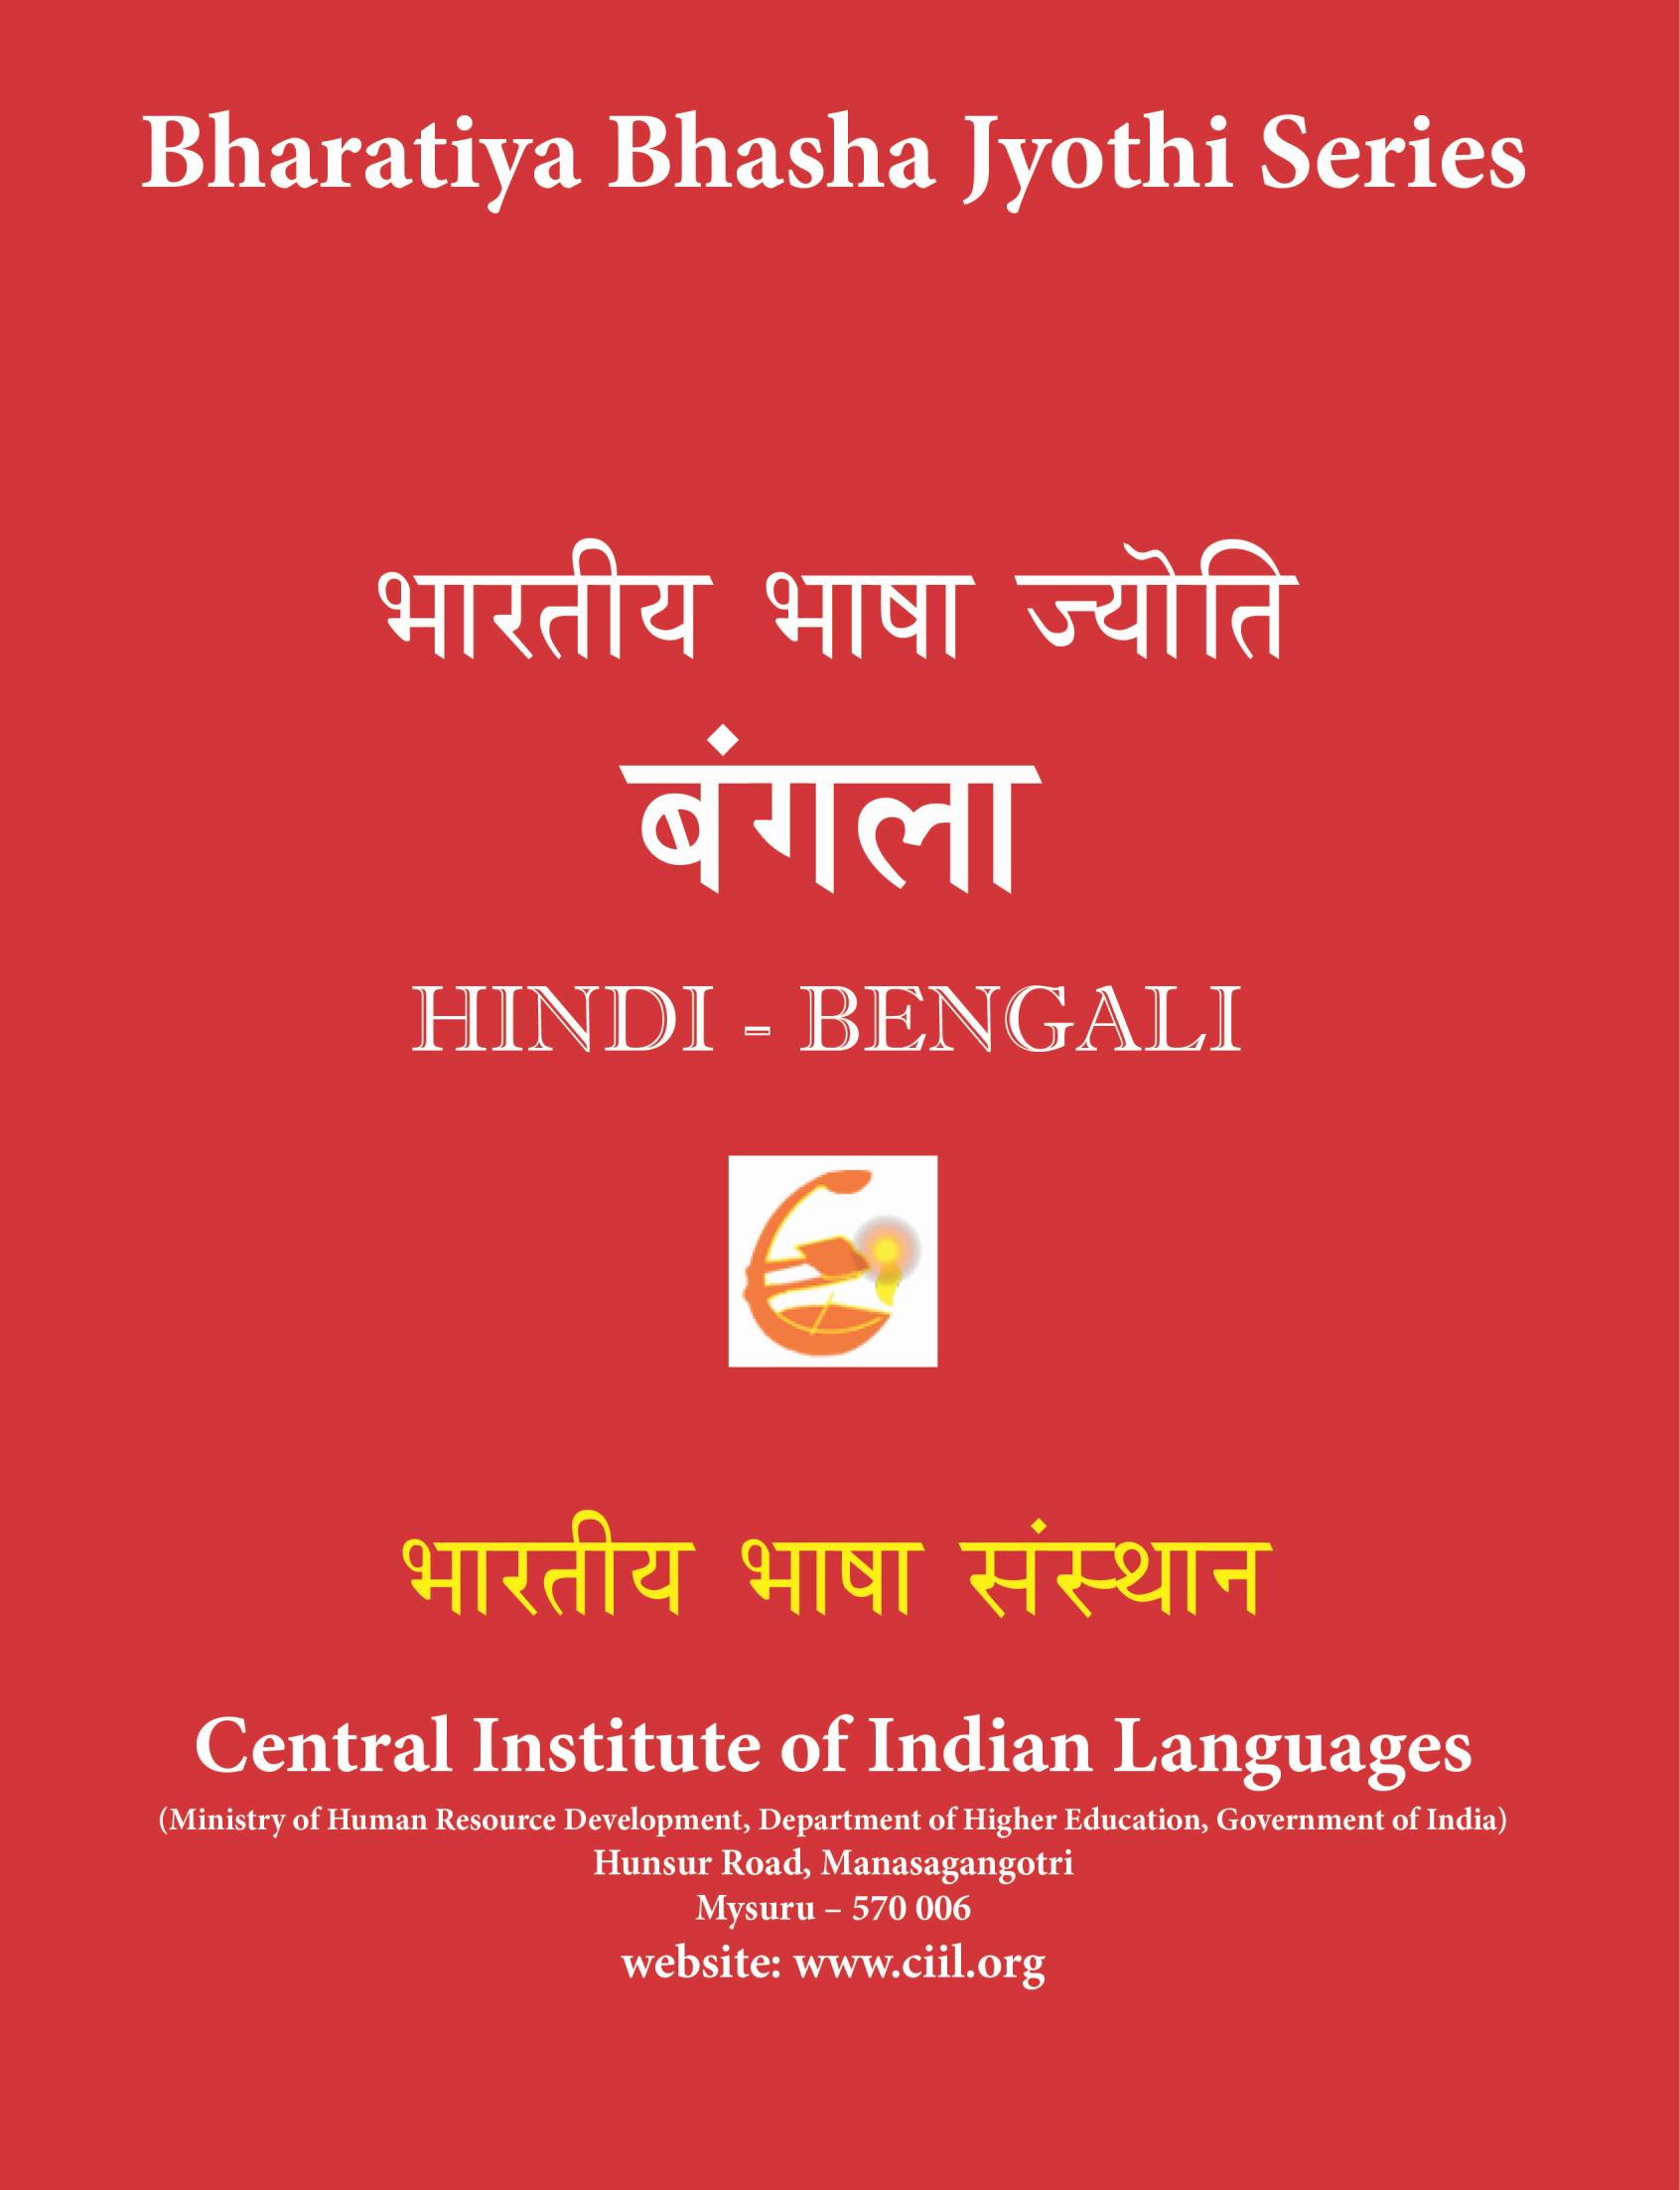 ভারতীয় ভাষা জ্যোতি : হিন্দি-বাংলা | Bharatiya Bhasha Jyoti: Hindi-Bengali